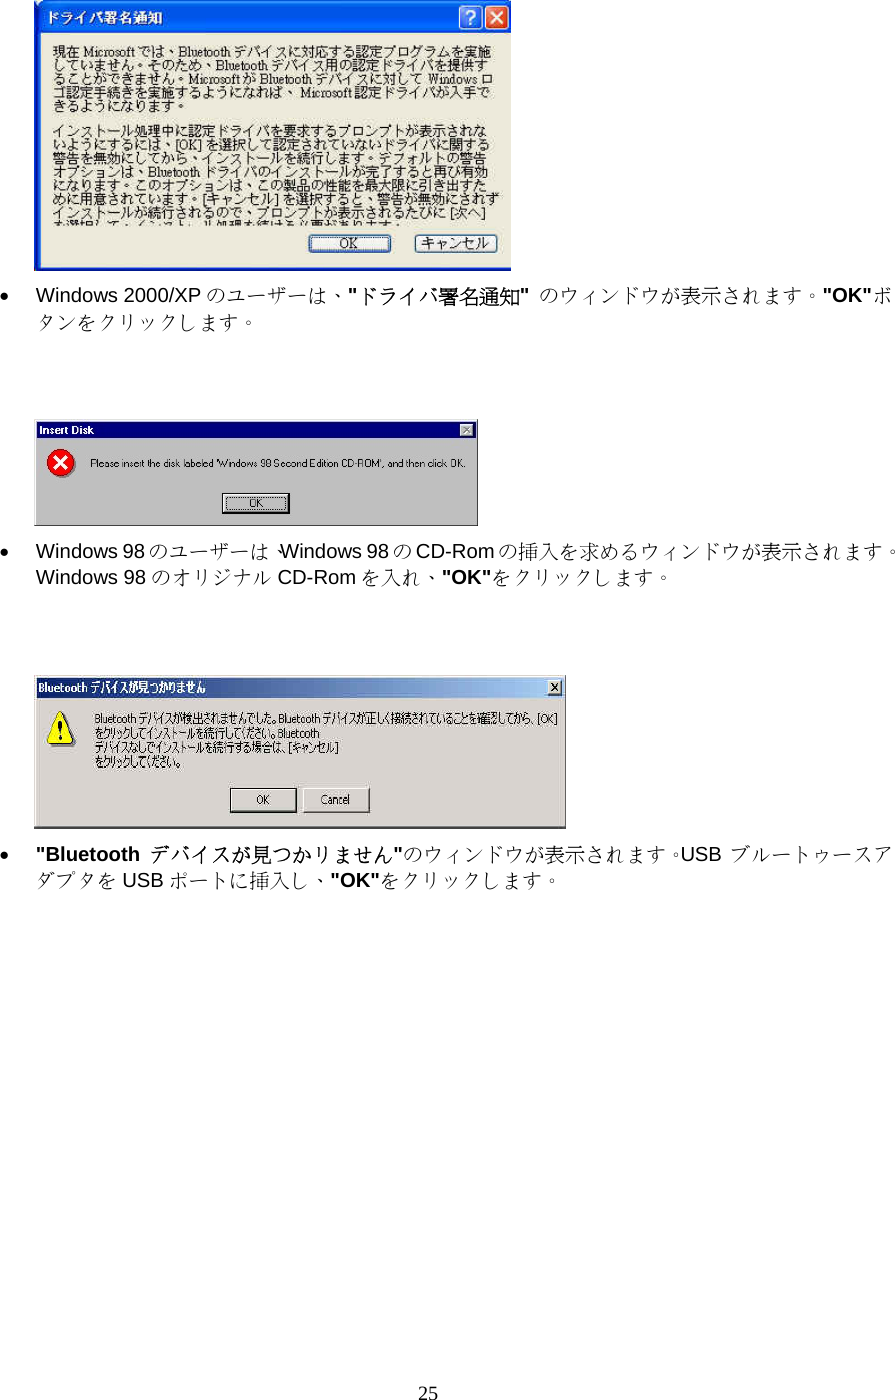 25  •  Windows 2000/XP のユーザーは、&quot;ドライバ署名通知&quot;  のウィンドウが表示されます。&quot;OK&quot;ボタンをクリックします。    •  Windows 98 のユーザーは、Windows 98 のCD-Rom の挿入を求めるウィンドウが表示されます。Windows 98 のオリジナル CD-Rom を入れ、&quot;OK&quot;をクリックします。    •  &quot;Bluetooth  デバイスが見つかリません&quot;のウィンドウが表示されます。USB  ブルートゥースアダプタを USB ポートに挿入し、&quot;OK&quot;をクリックします。 